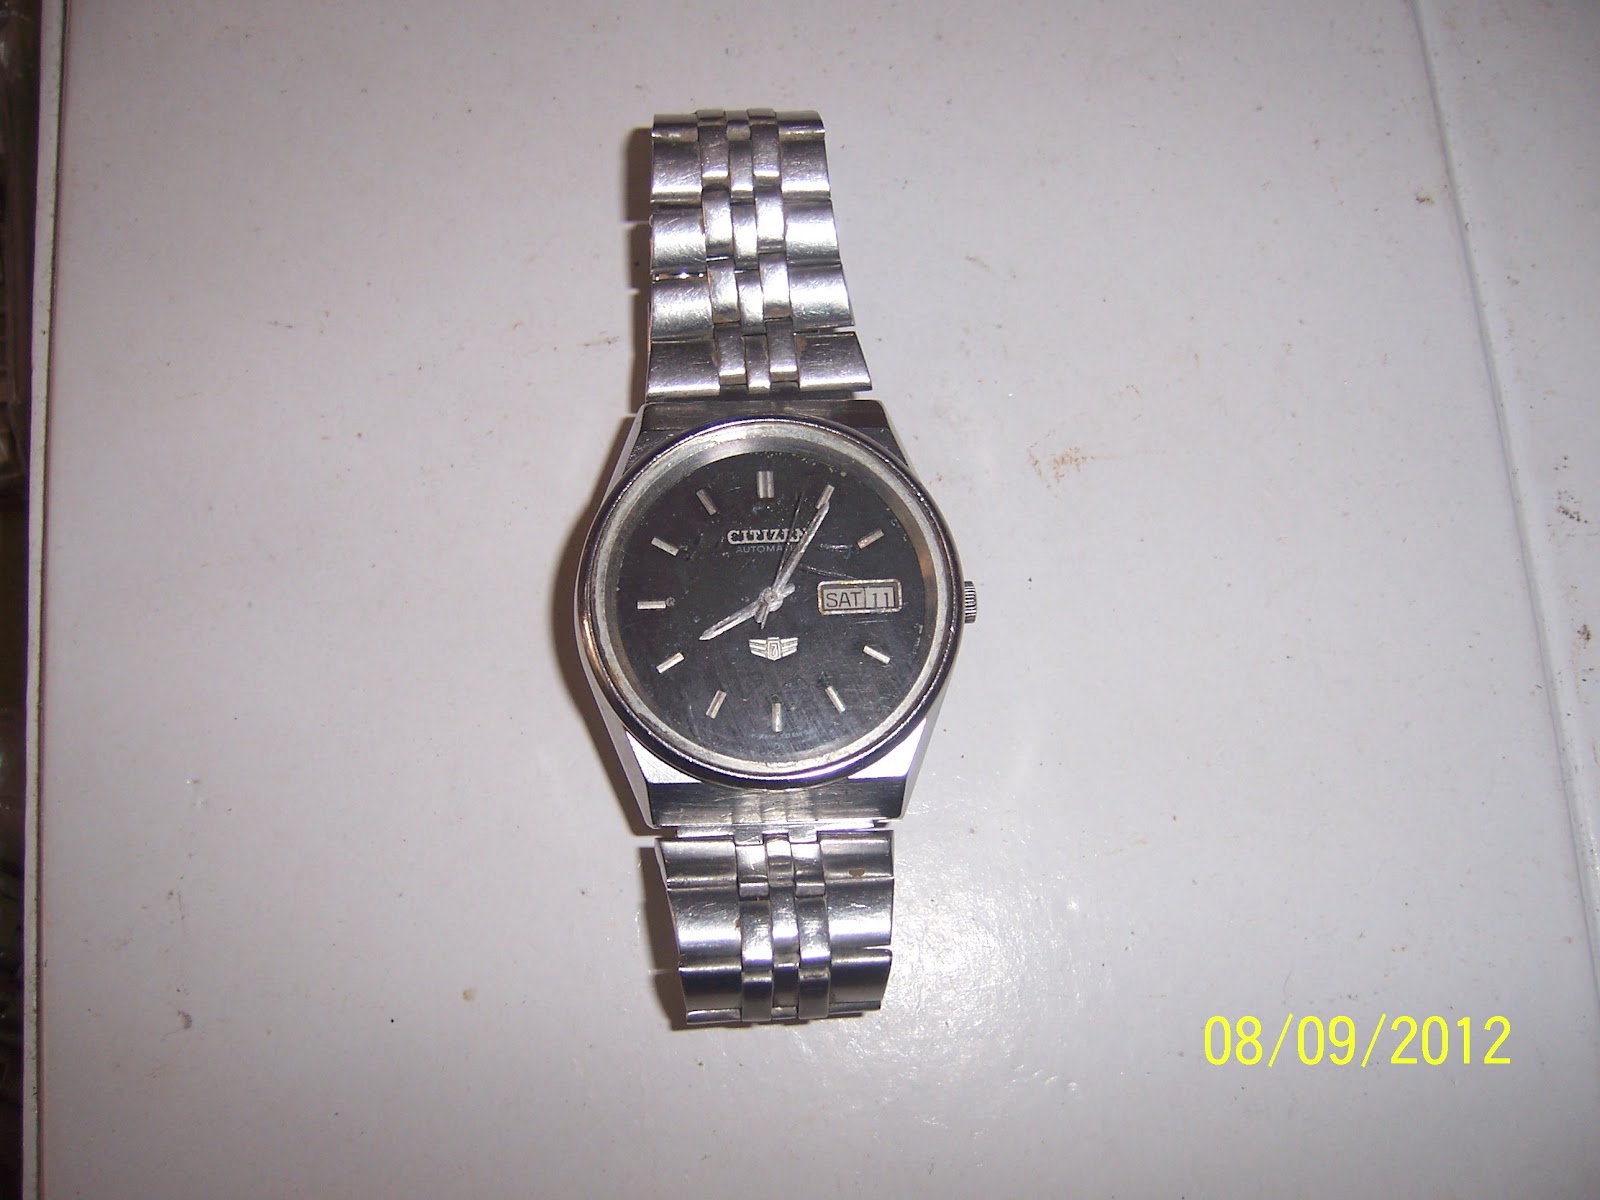 Jam tangan jadul dan antik: Jam tangan citizen 7 - Terjual 